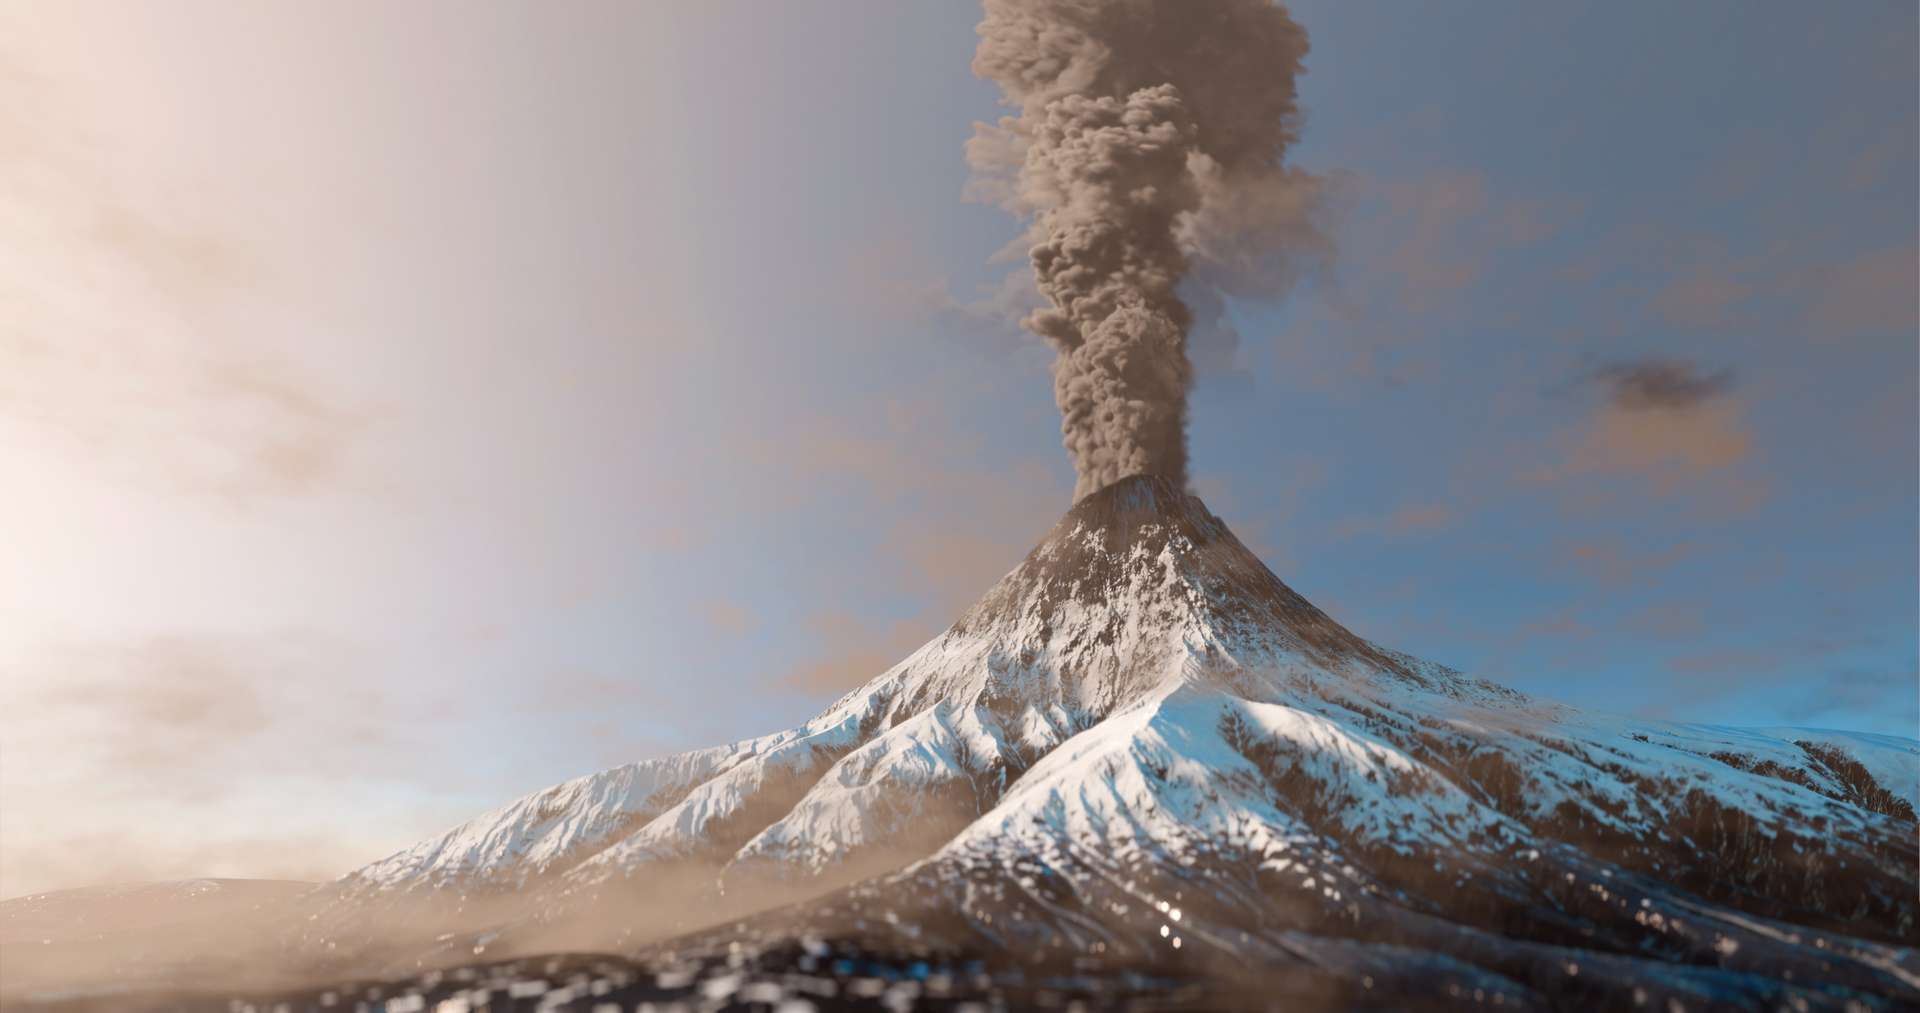 L’impact des volcans serait largement sous-estimé dans les projections climatiques actuelles